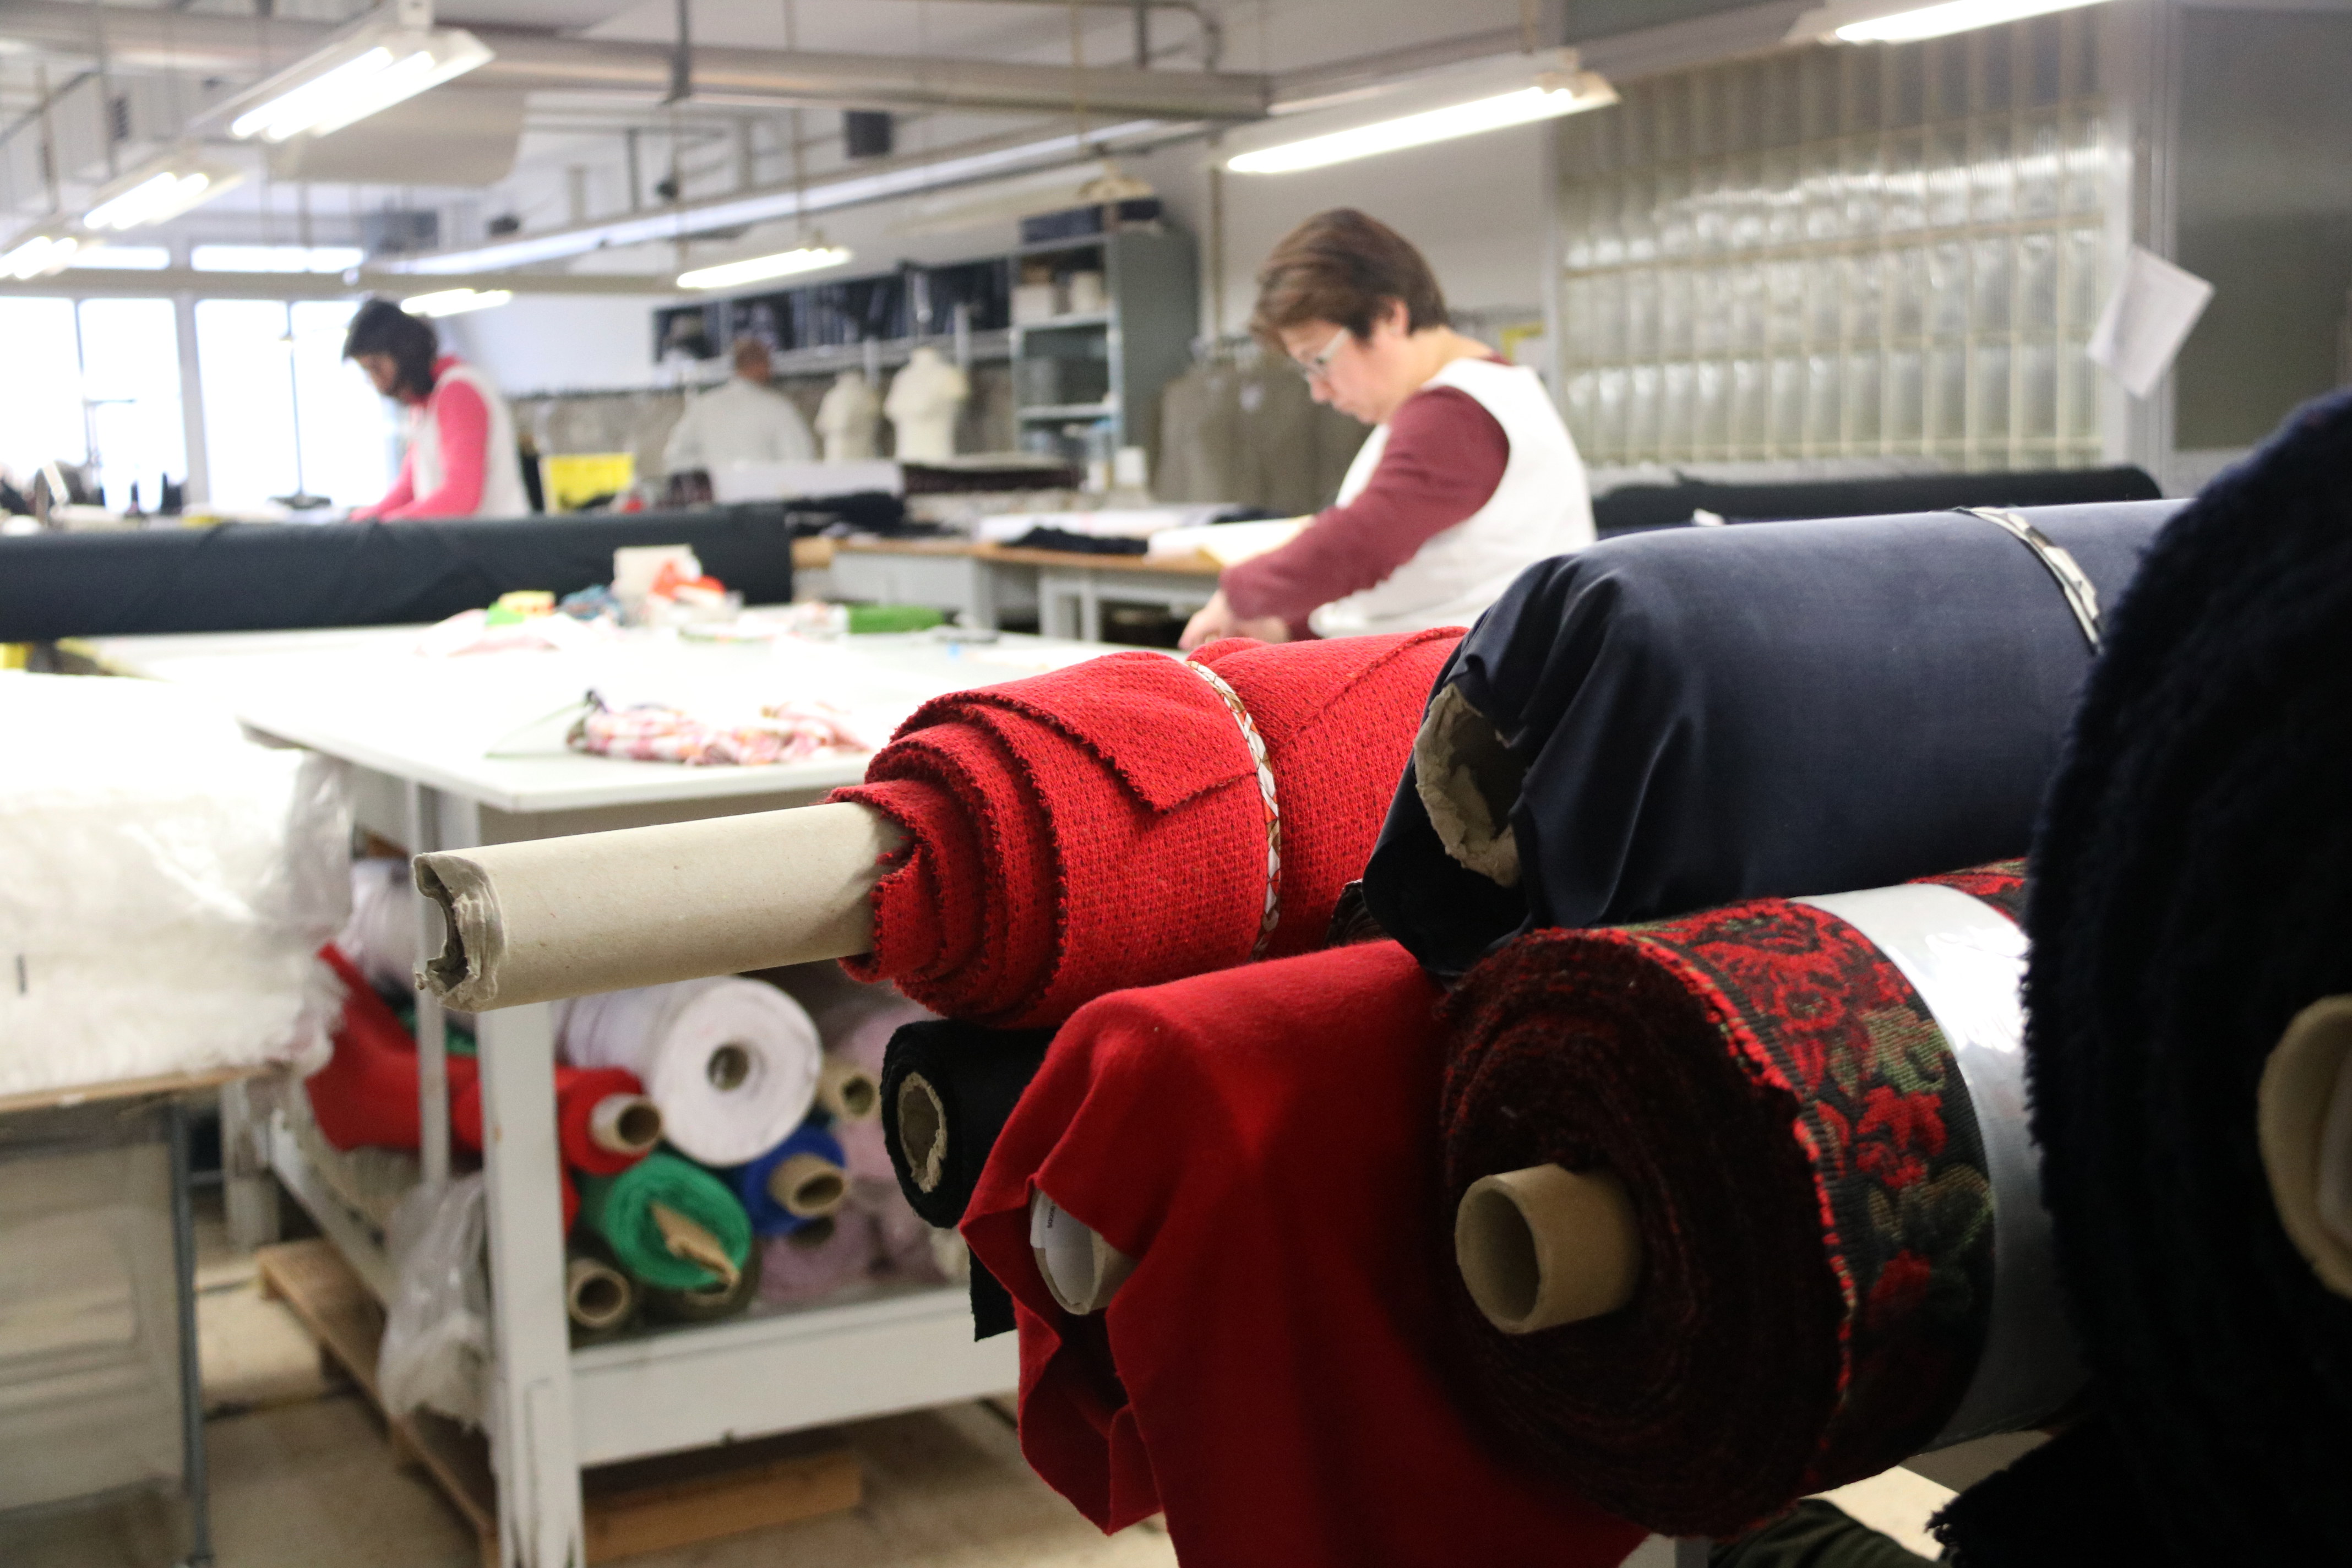 Treballadores fent feina en una fàbrica tèxtil